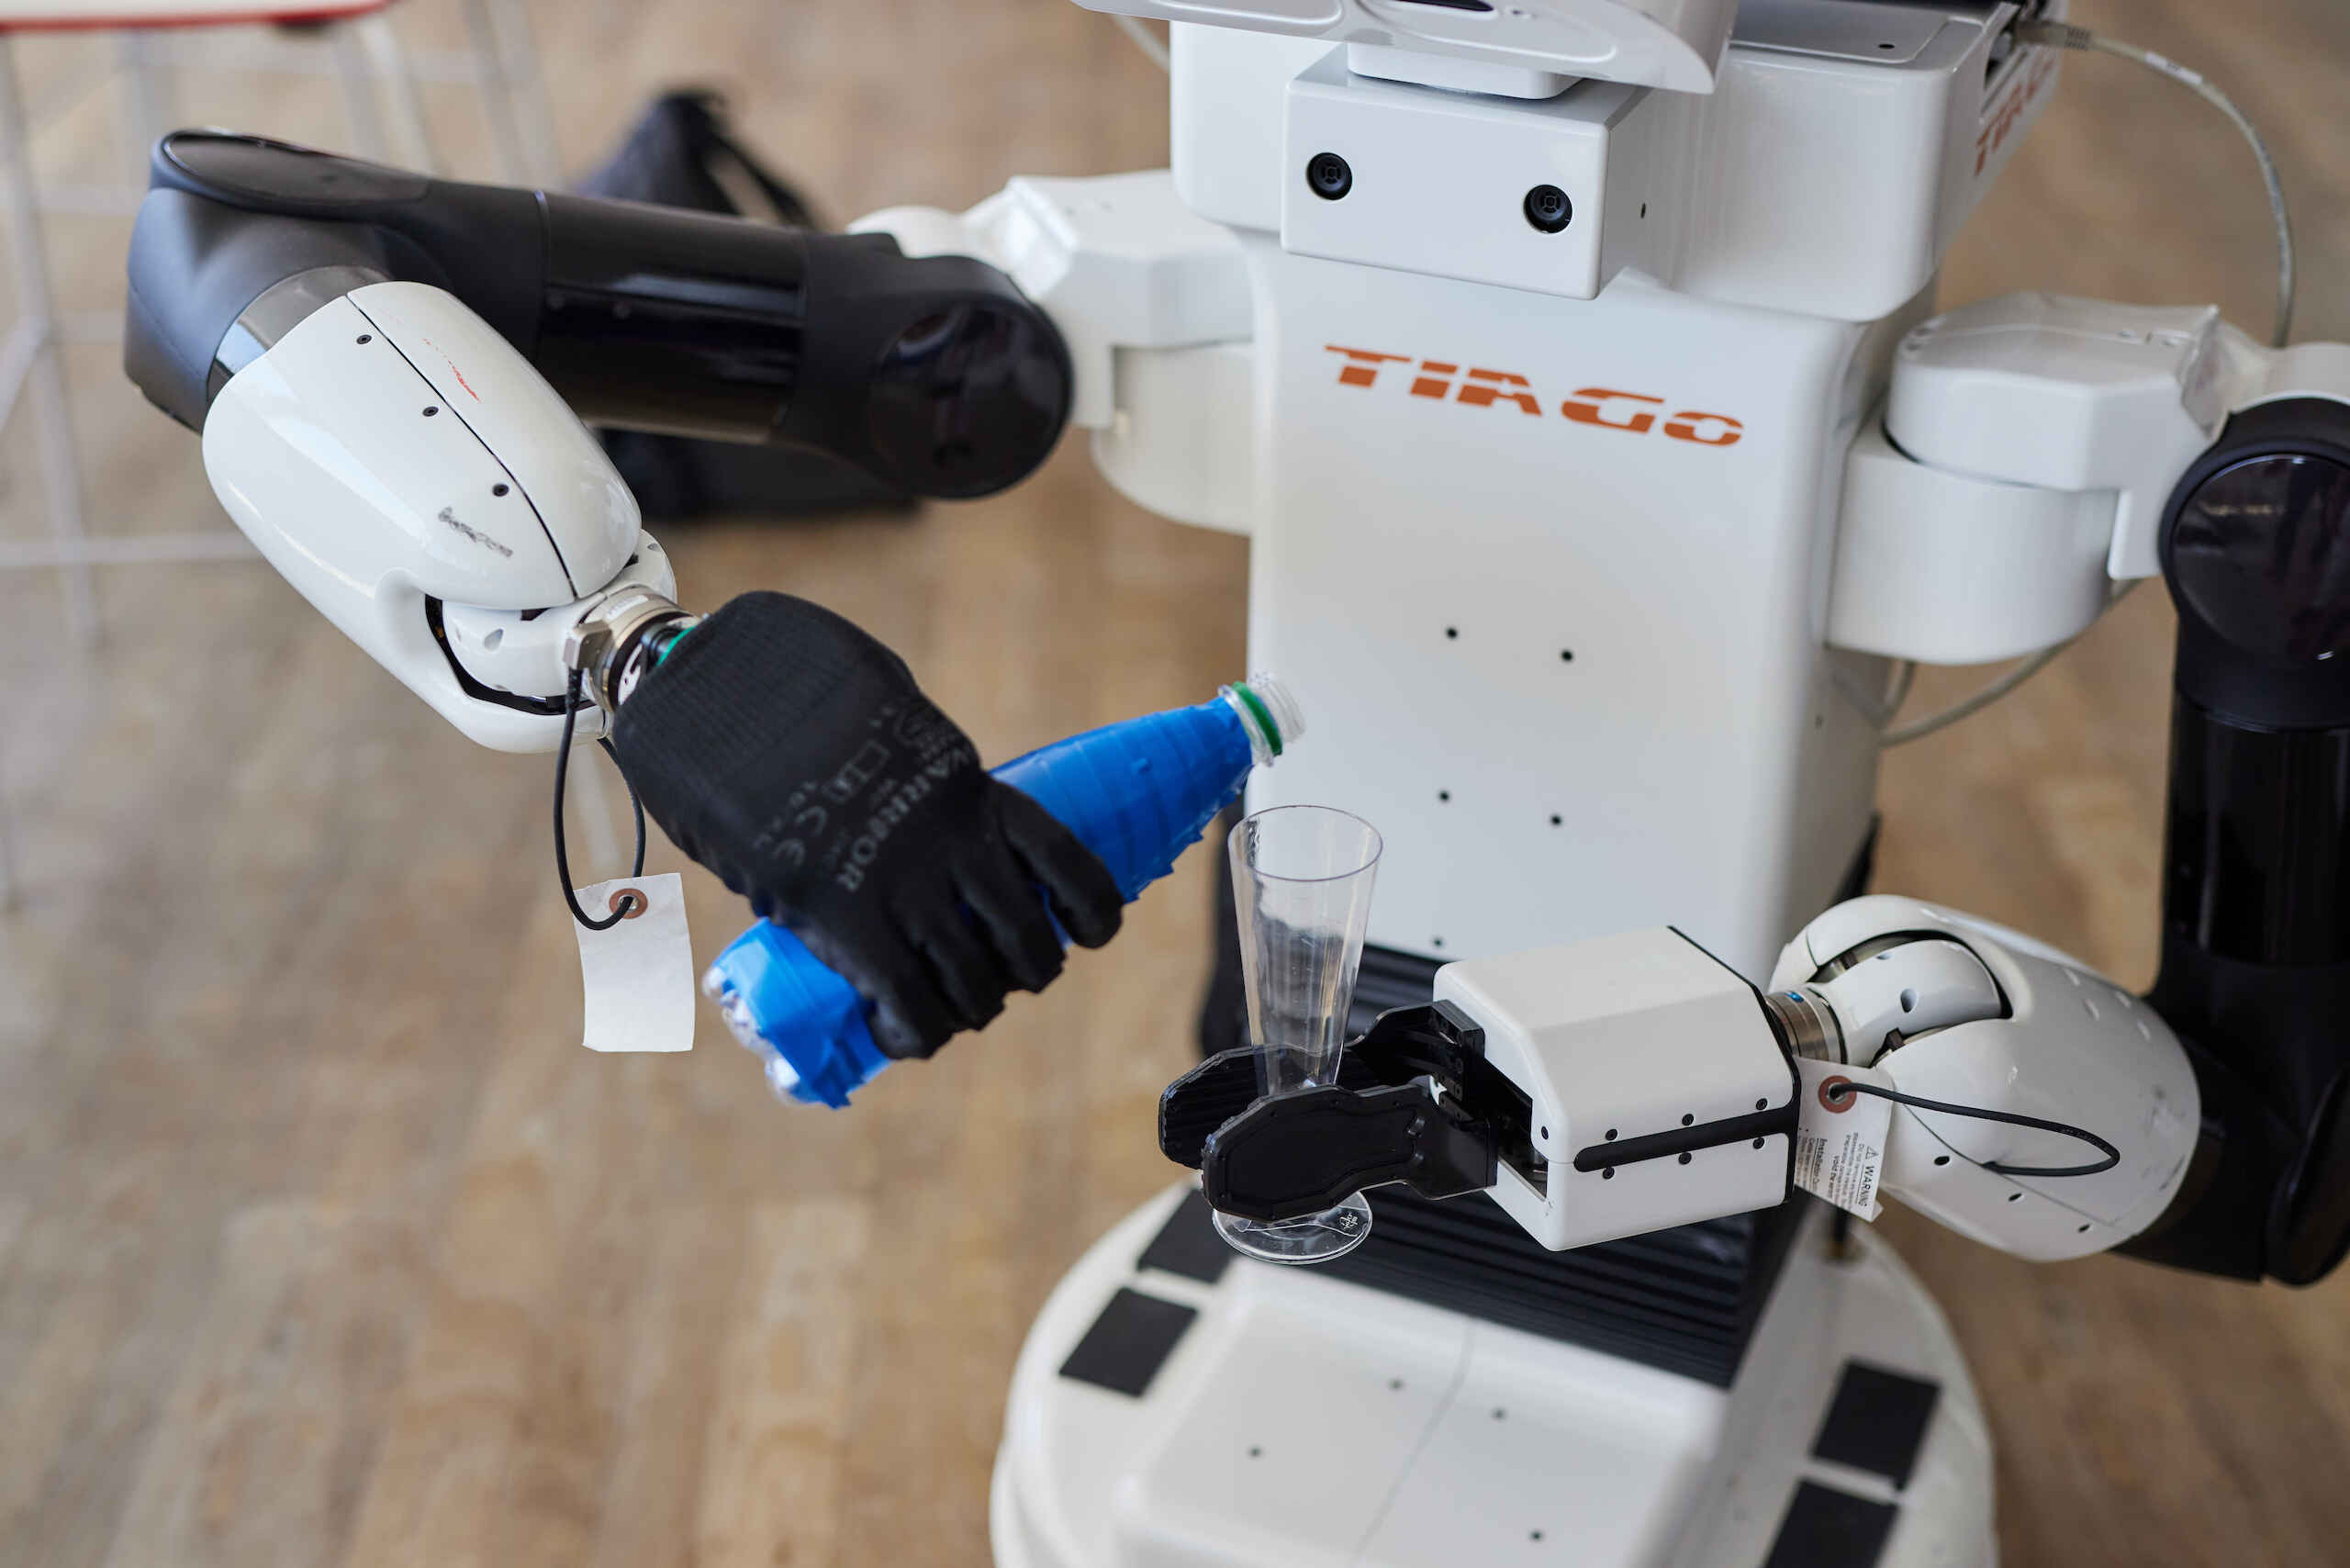 TIAGo, ein Forschungsroboter, lernt mittels KI-Unterstützung der KI-Pionierin und Körber-Preisträgerin Cordelia Schmid grundlegende menschliche Fähigkeiten.